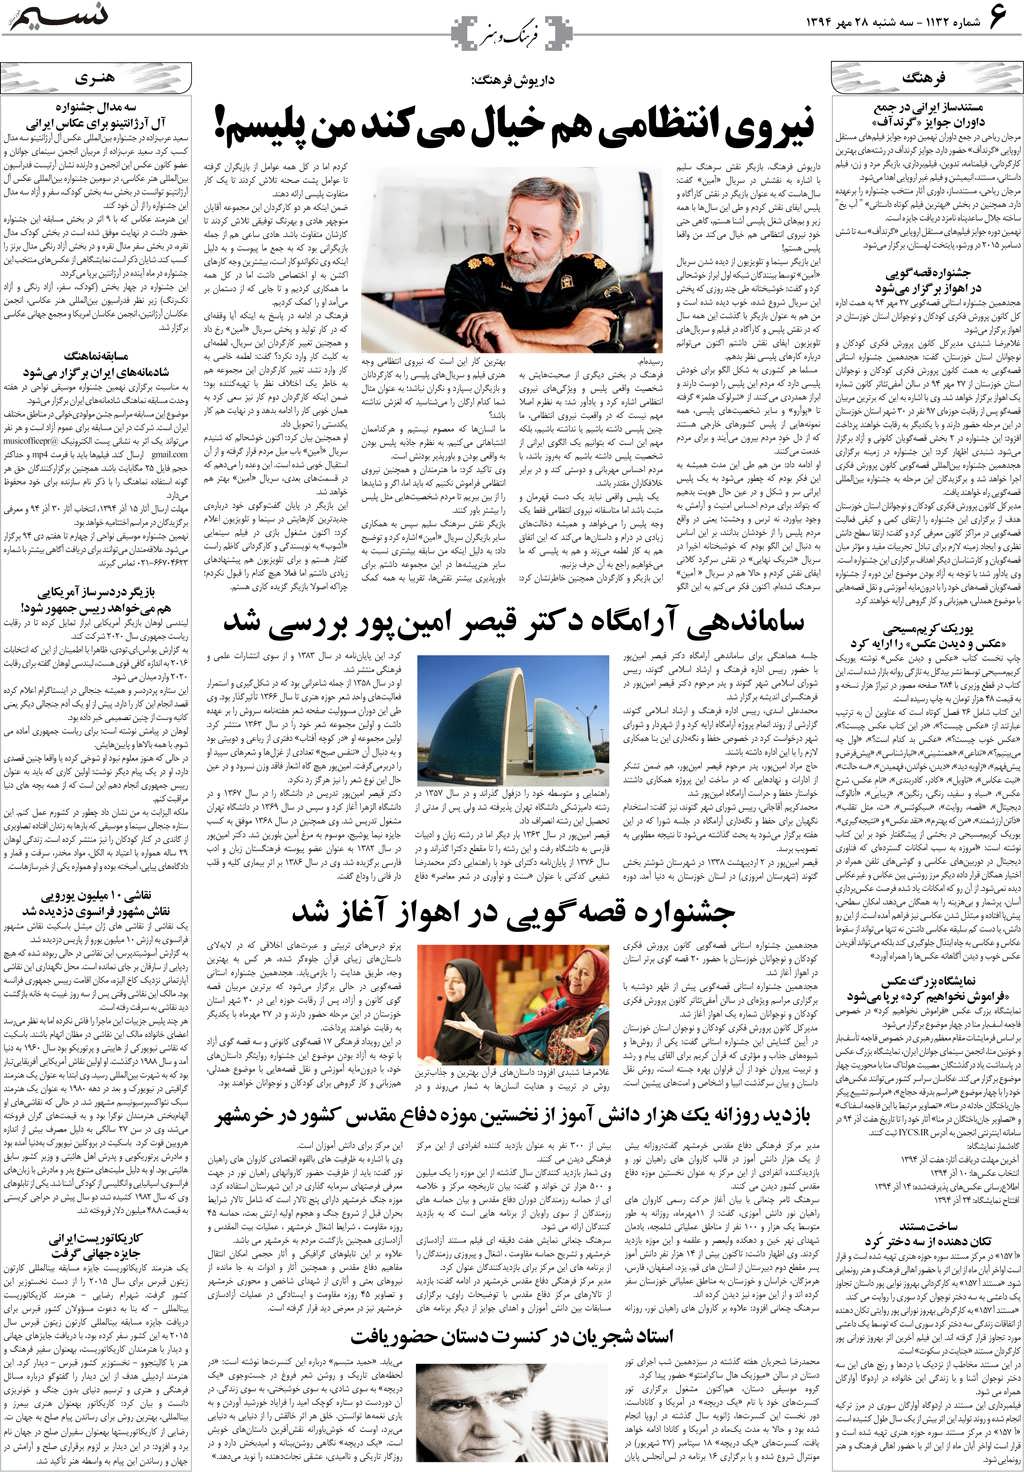 صفحه فرهنگ و هنر روزنامه نسیم شماره 1132